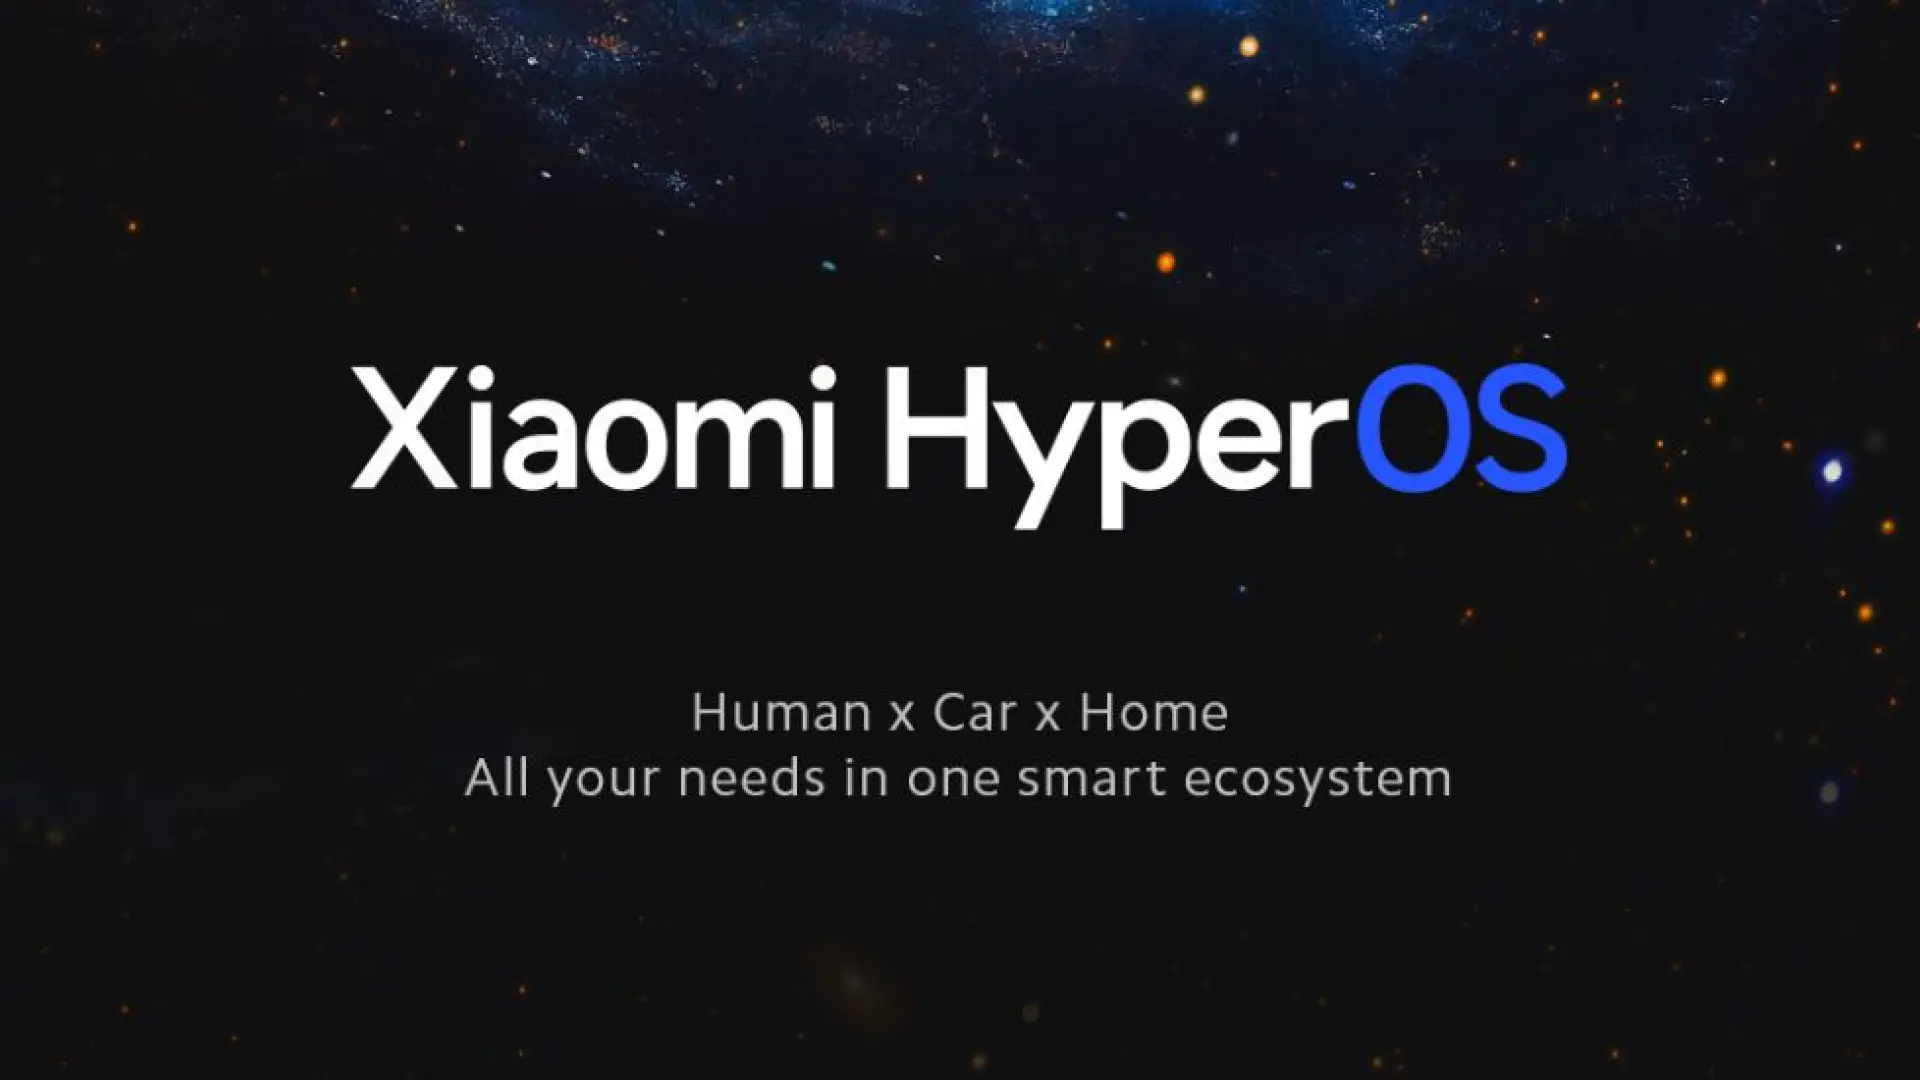 14 Les smartphones, tablettes et téléviseurs de Xiaomi seront équipés du système d'exploitation HyperOS dès l'hiver.